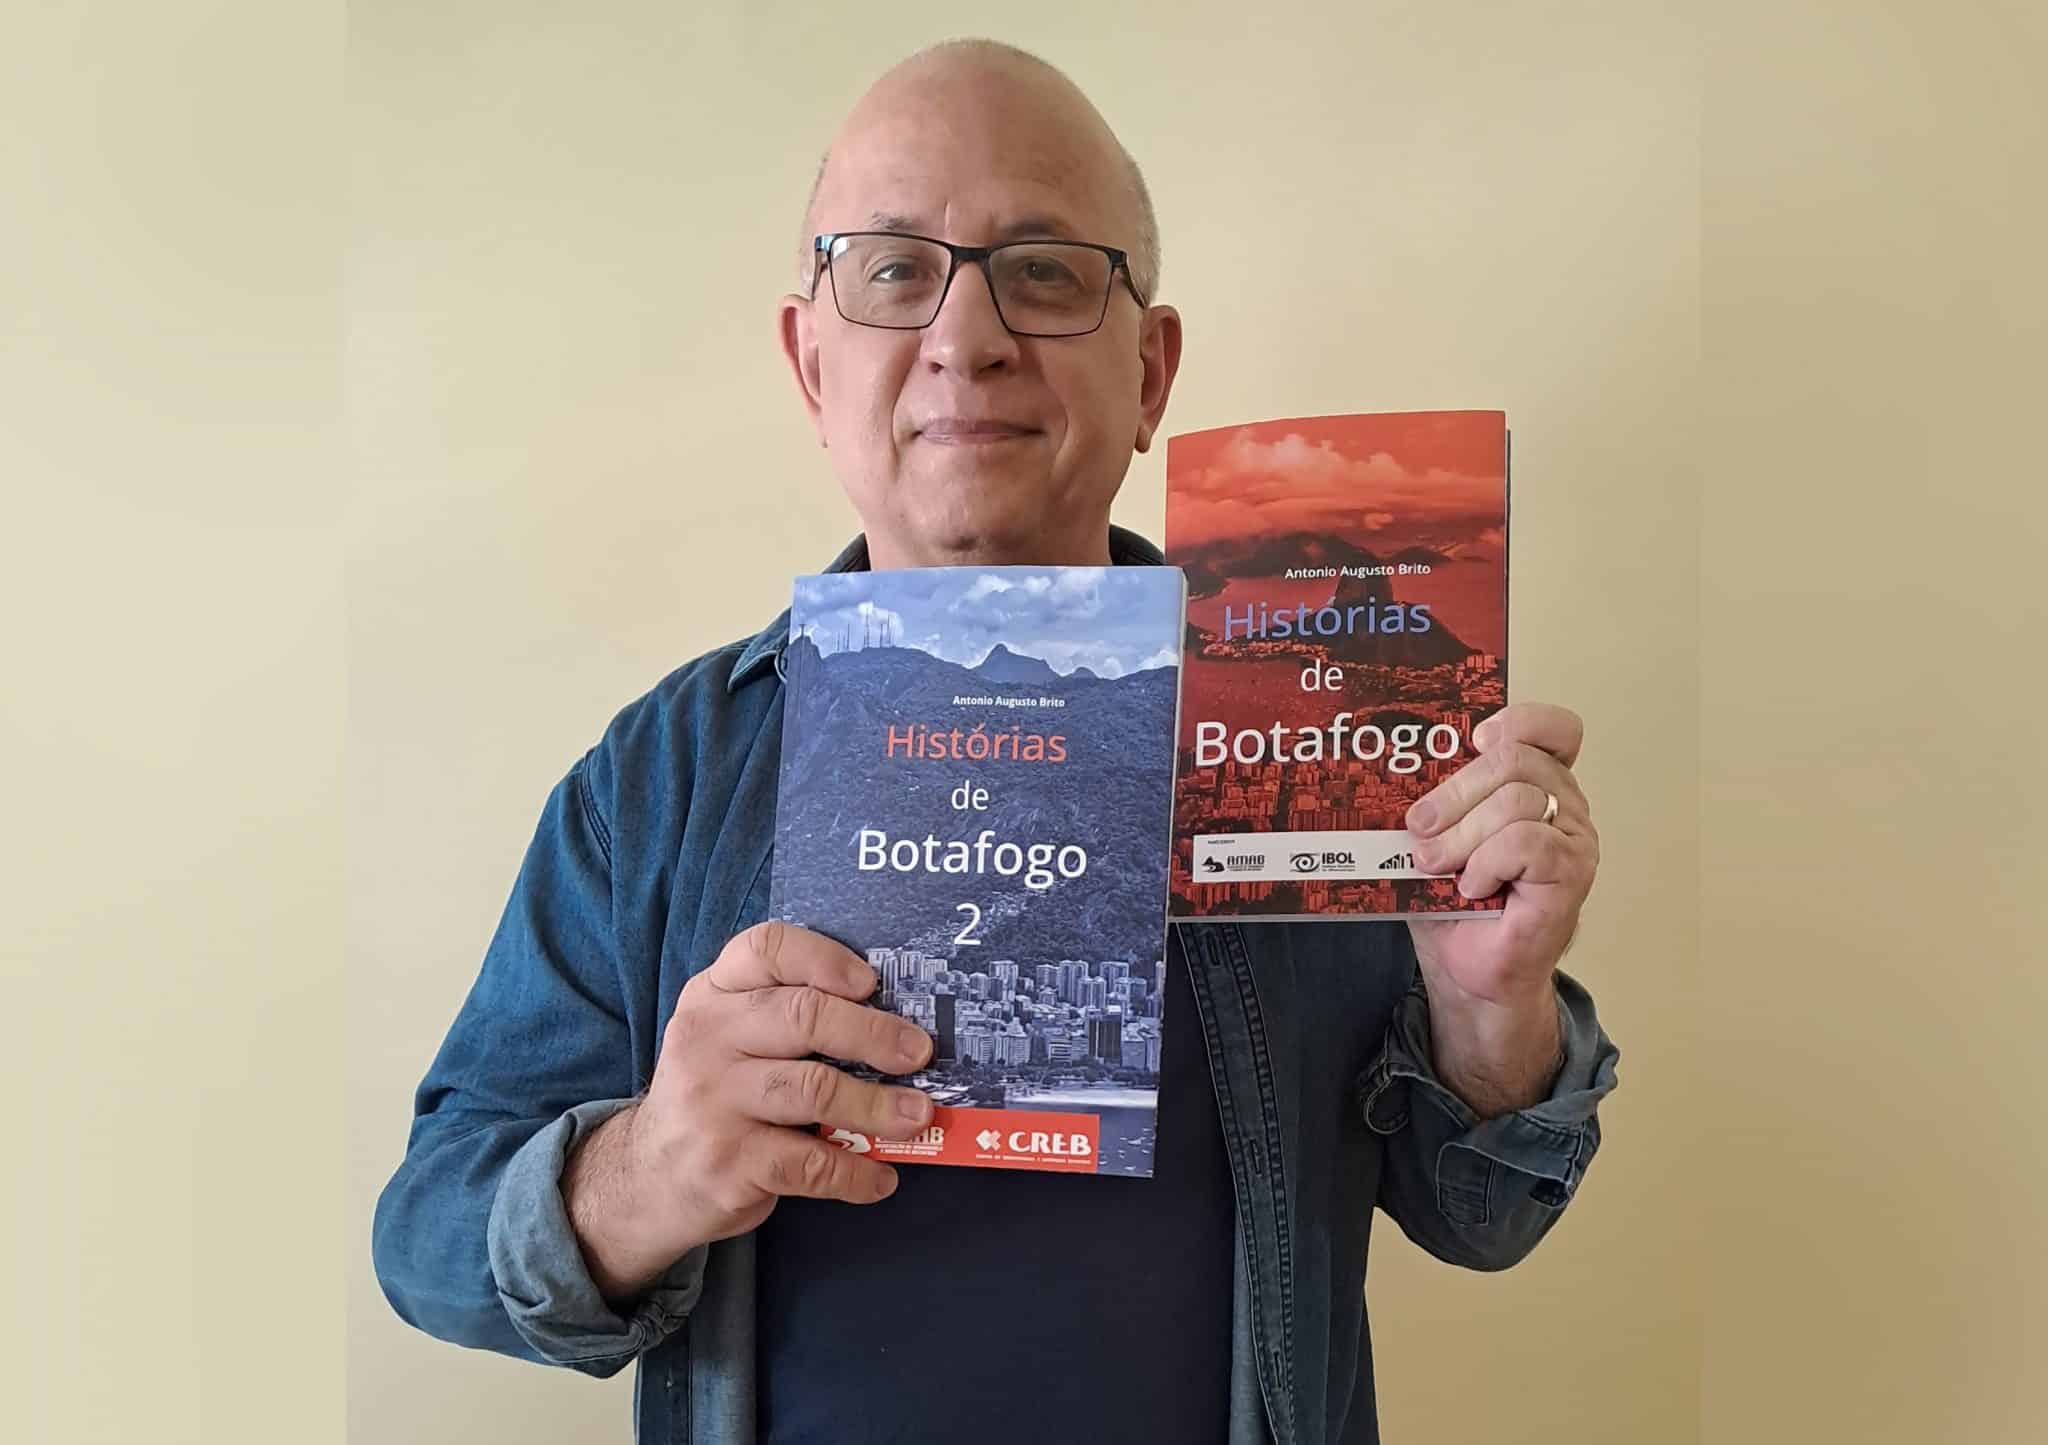 revistaprosaversoearte.com - O jornalista Antonio Augusto Brito lança 'Histórias de Botafogo 2'